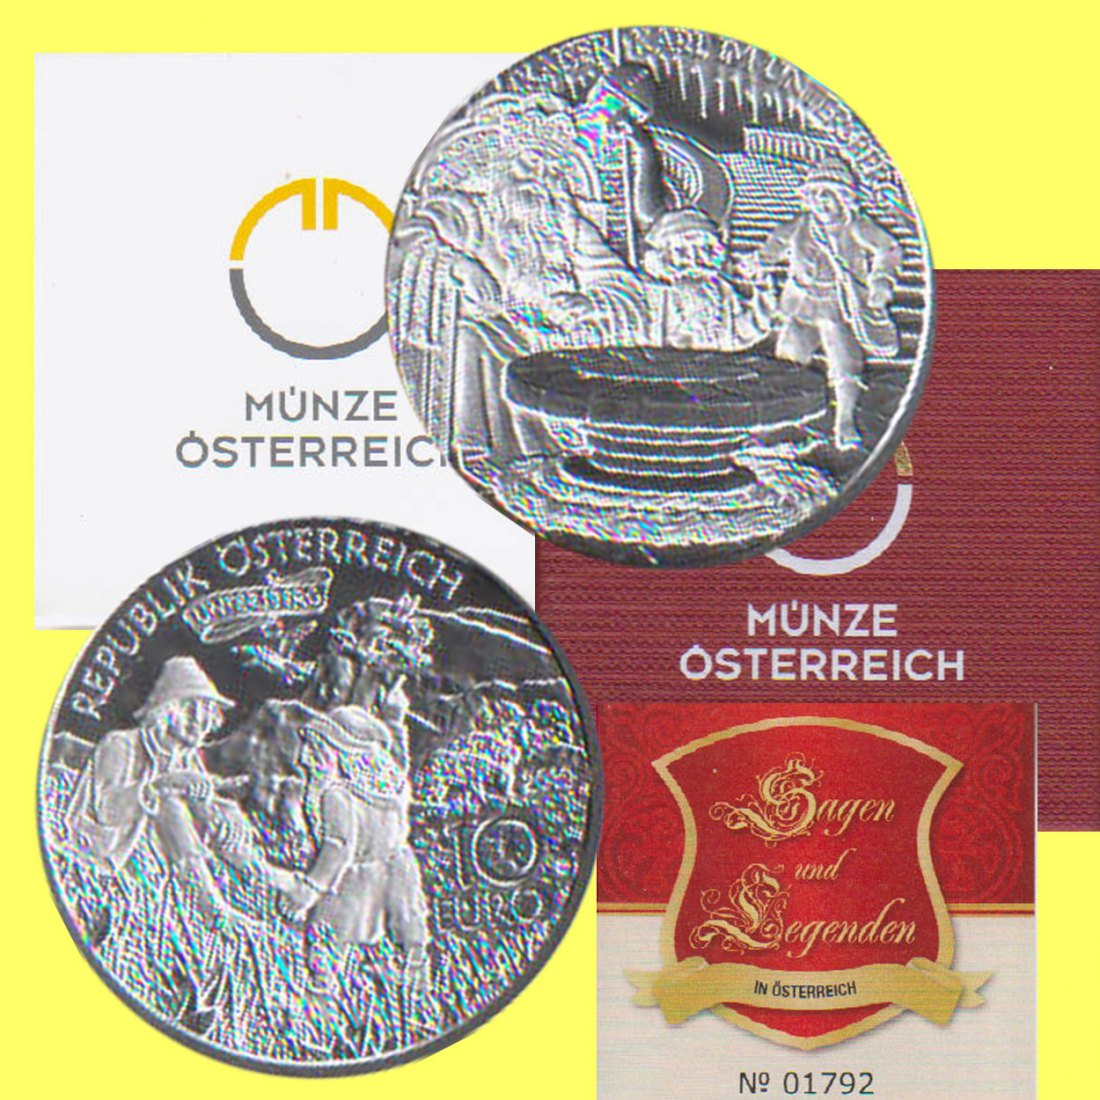  Offiz. 10 Euro Silbermünze Österreich *Kaiser Karl der Große im Untersberg* 2010 *PP* max 40.000St!   